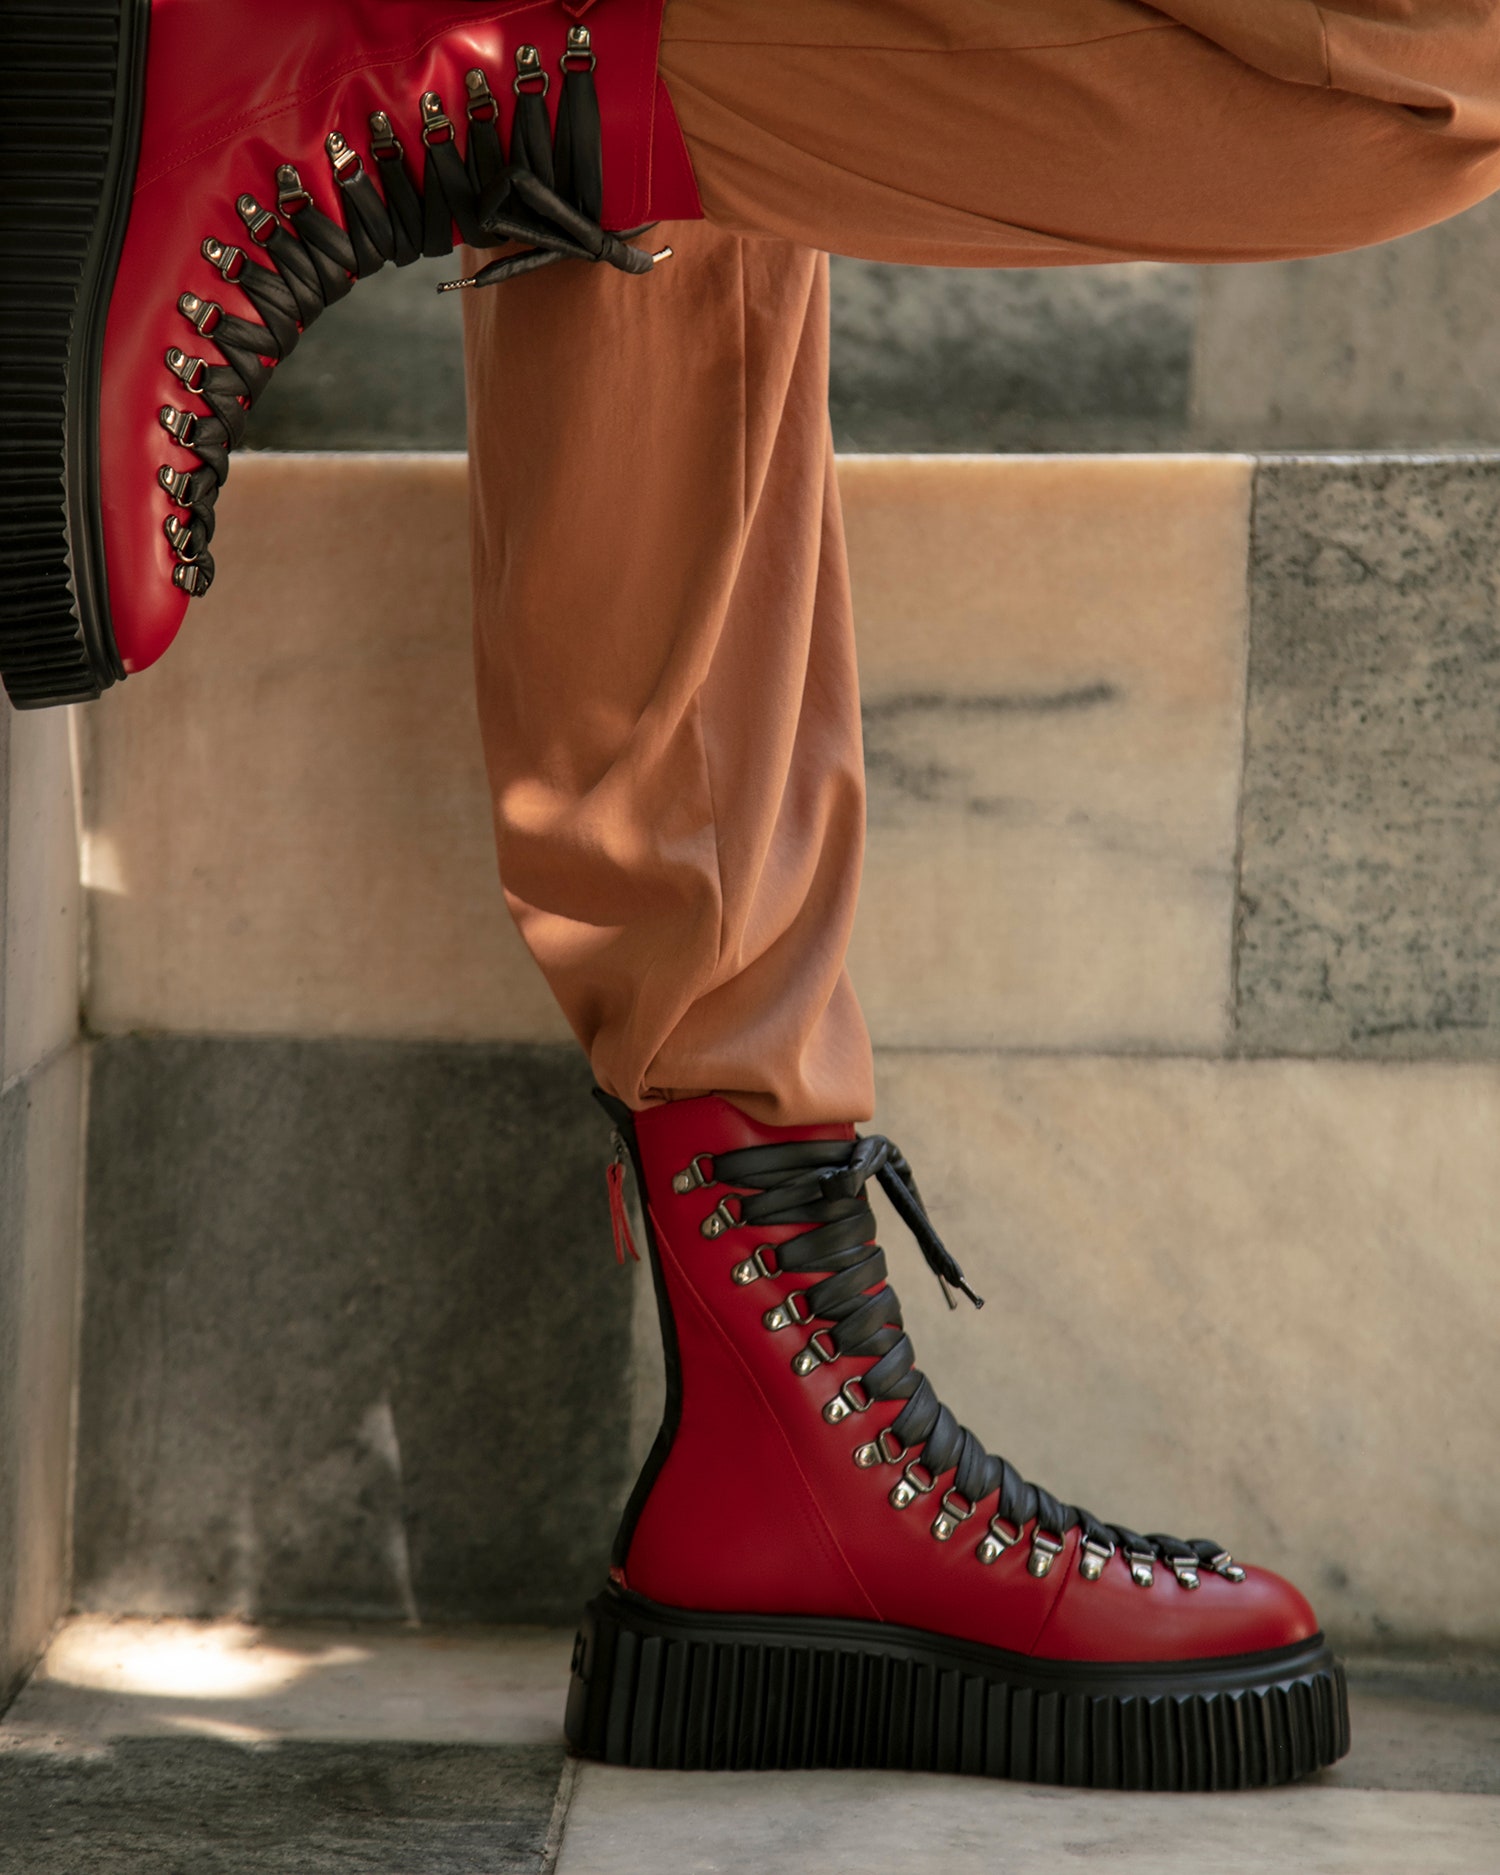 Новые брутальные высокие ботинки AGL на шнуровке в стиле гранж — новое решение итальянского бренда для базового гардероба, которое подойдет как на каждый день, так и для особого случая